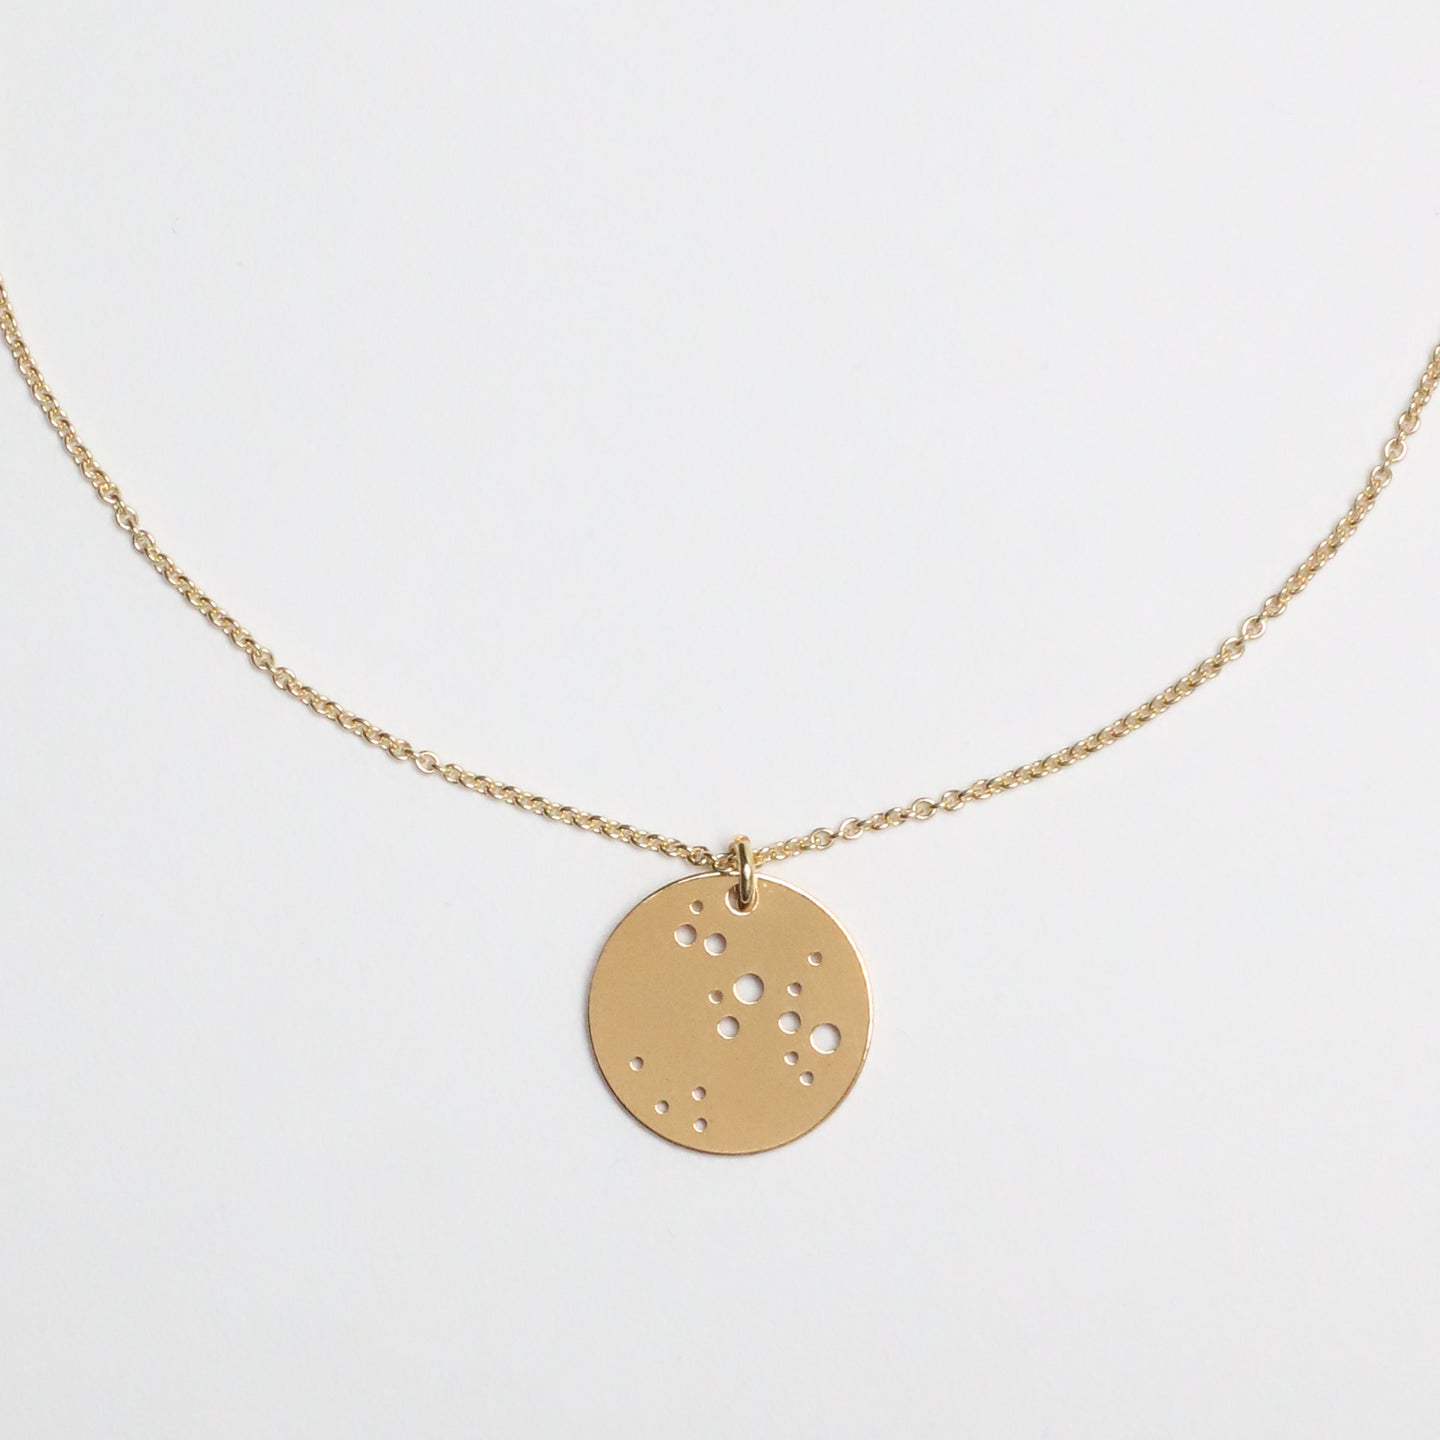 STERNZEICHENKETTE - Schütze, 925 Silber vergoldet, Geschenk für sie, filigrane Kette, besondere Geschenkidee, personalisierter Symbolkette